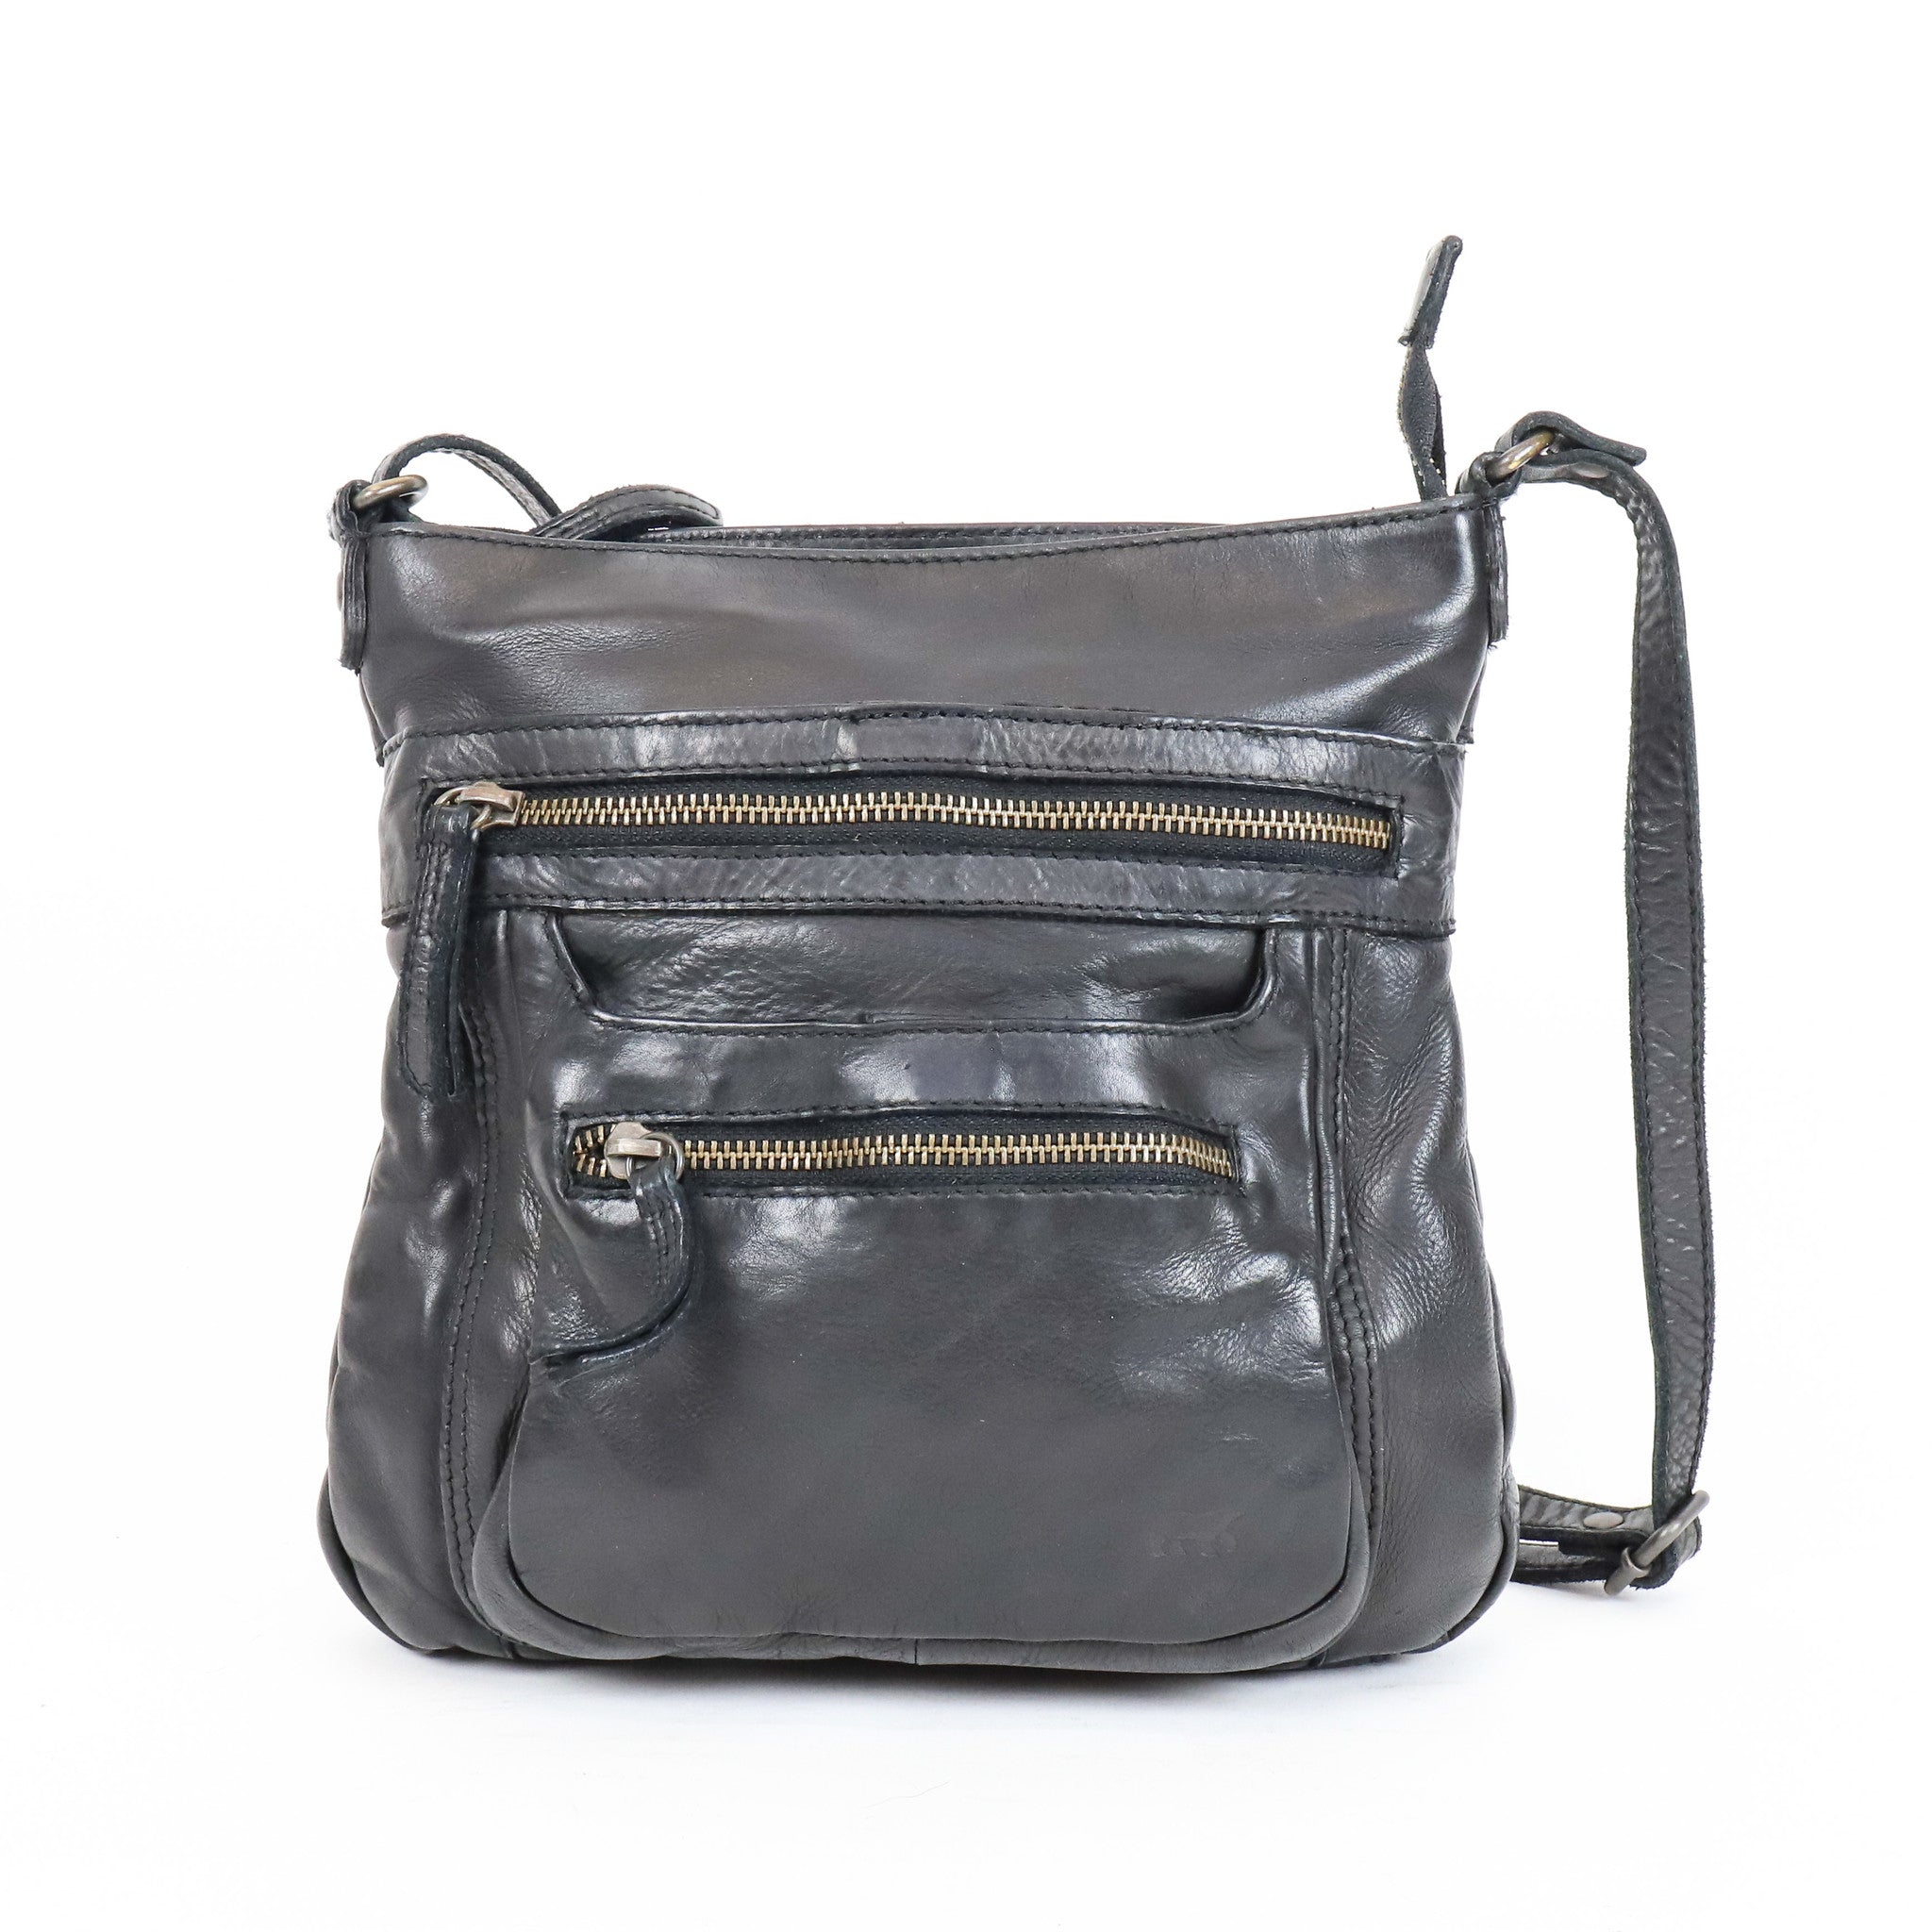 Shoulder bag 'Marion' black - CL 40496